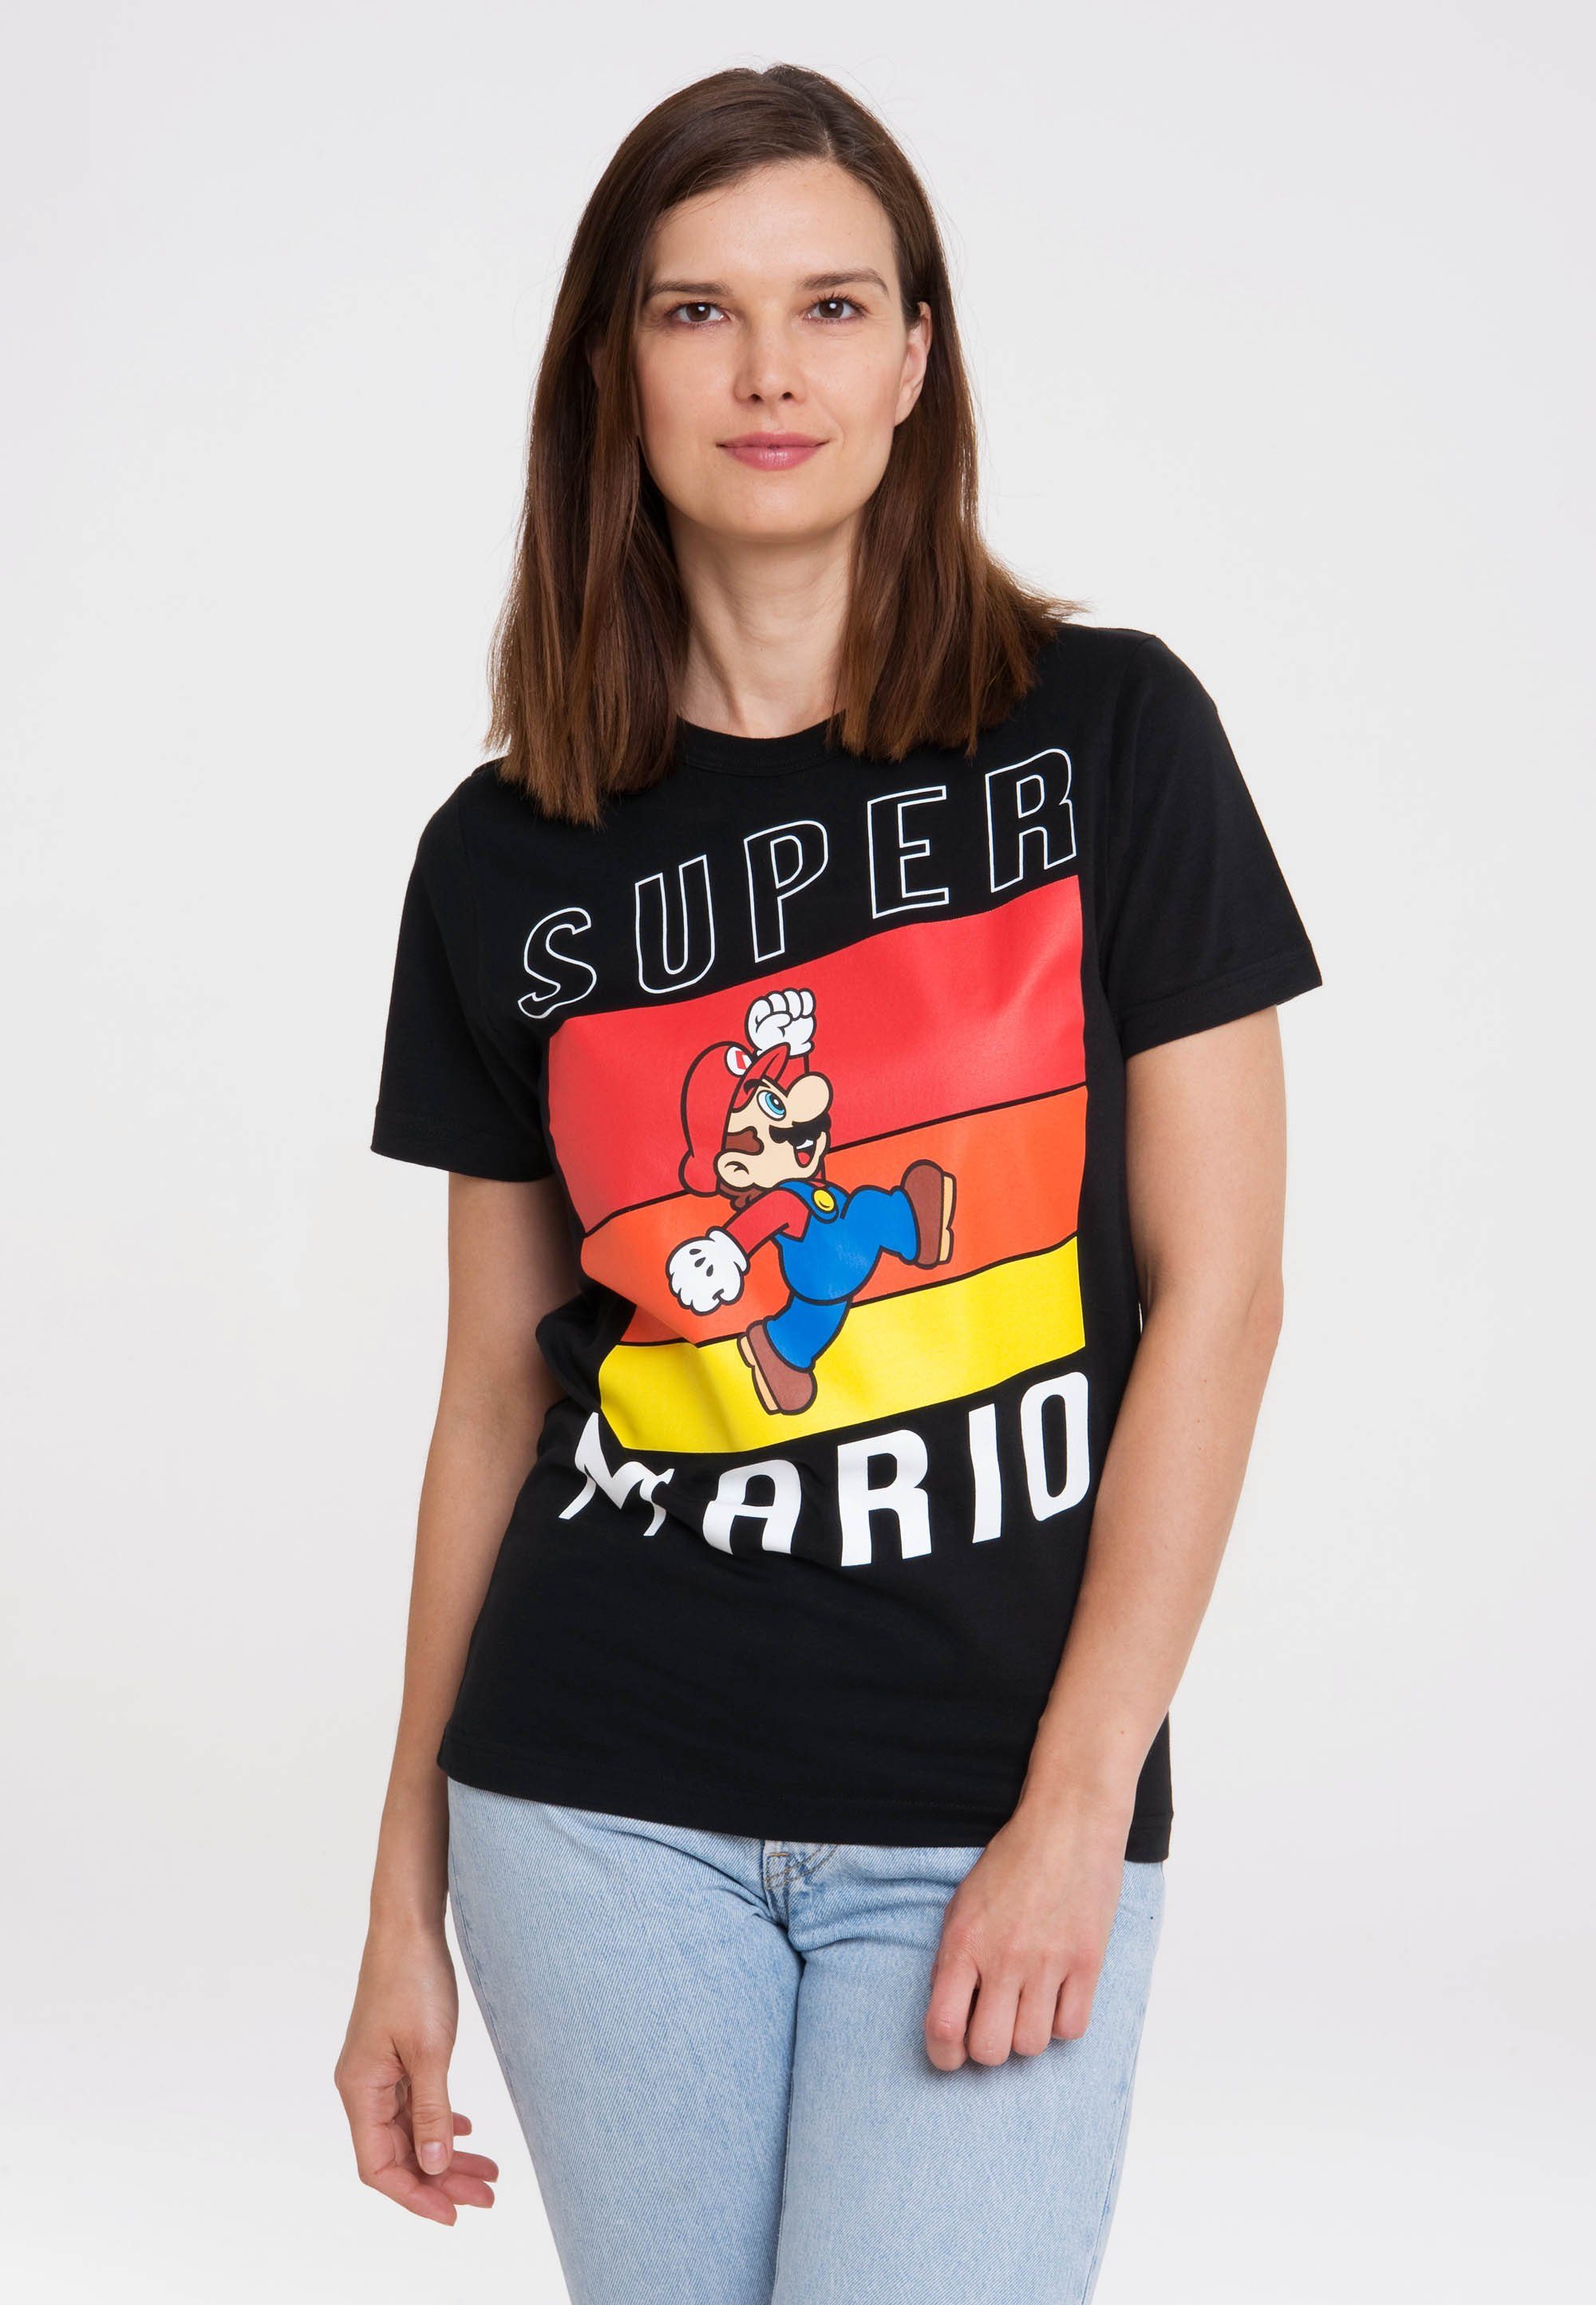 Top-Technologie LOGOSHIRT T-Shirt Super Print Jump Mario lizenziertem mit 